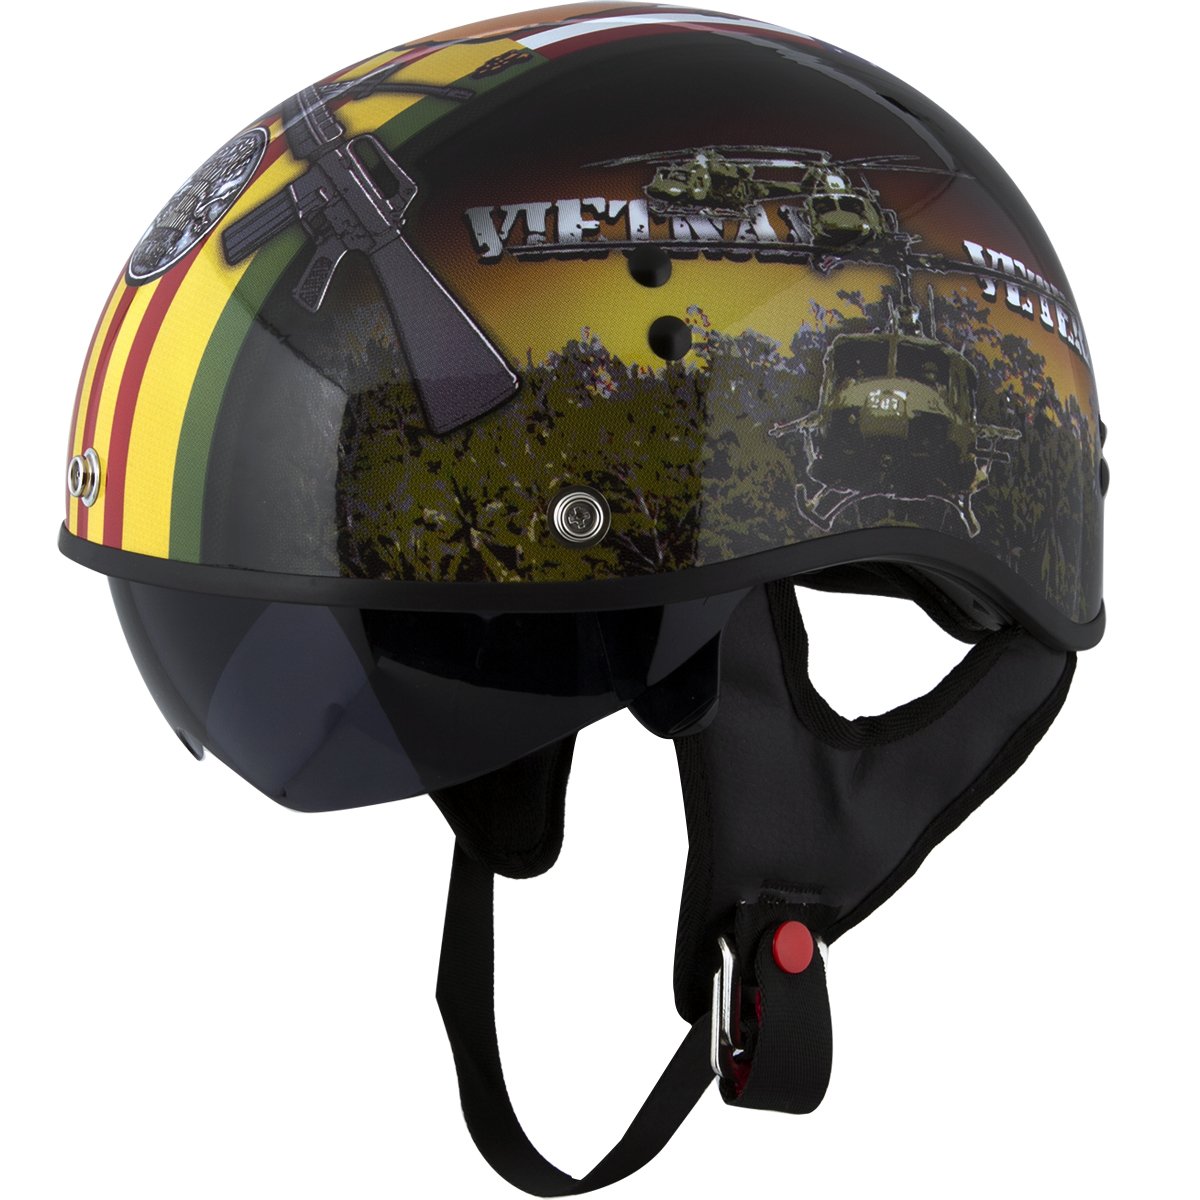 Outlaw Helmets HT1 Hustler Solid Matte Black Motorcycle Half